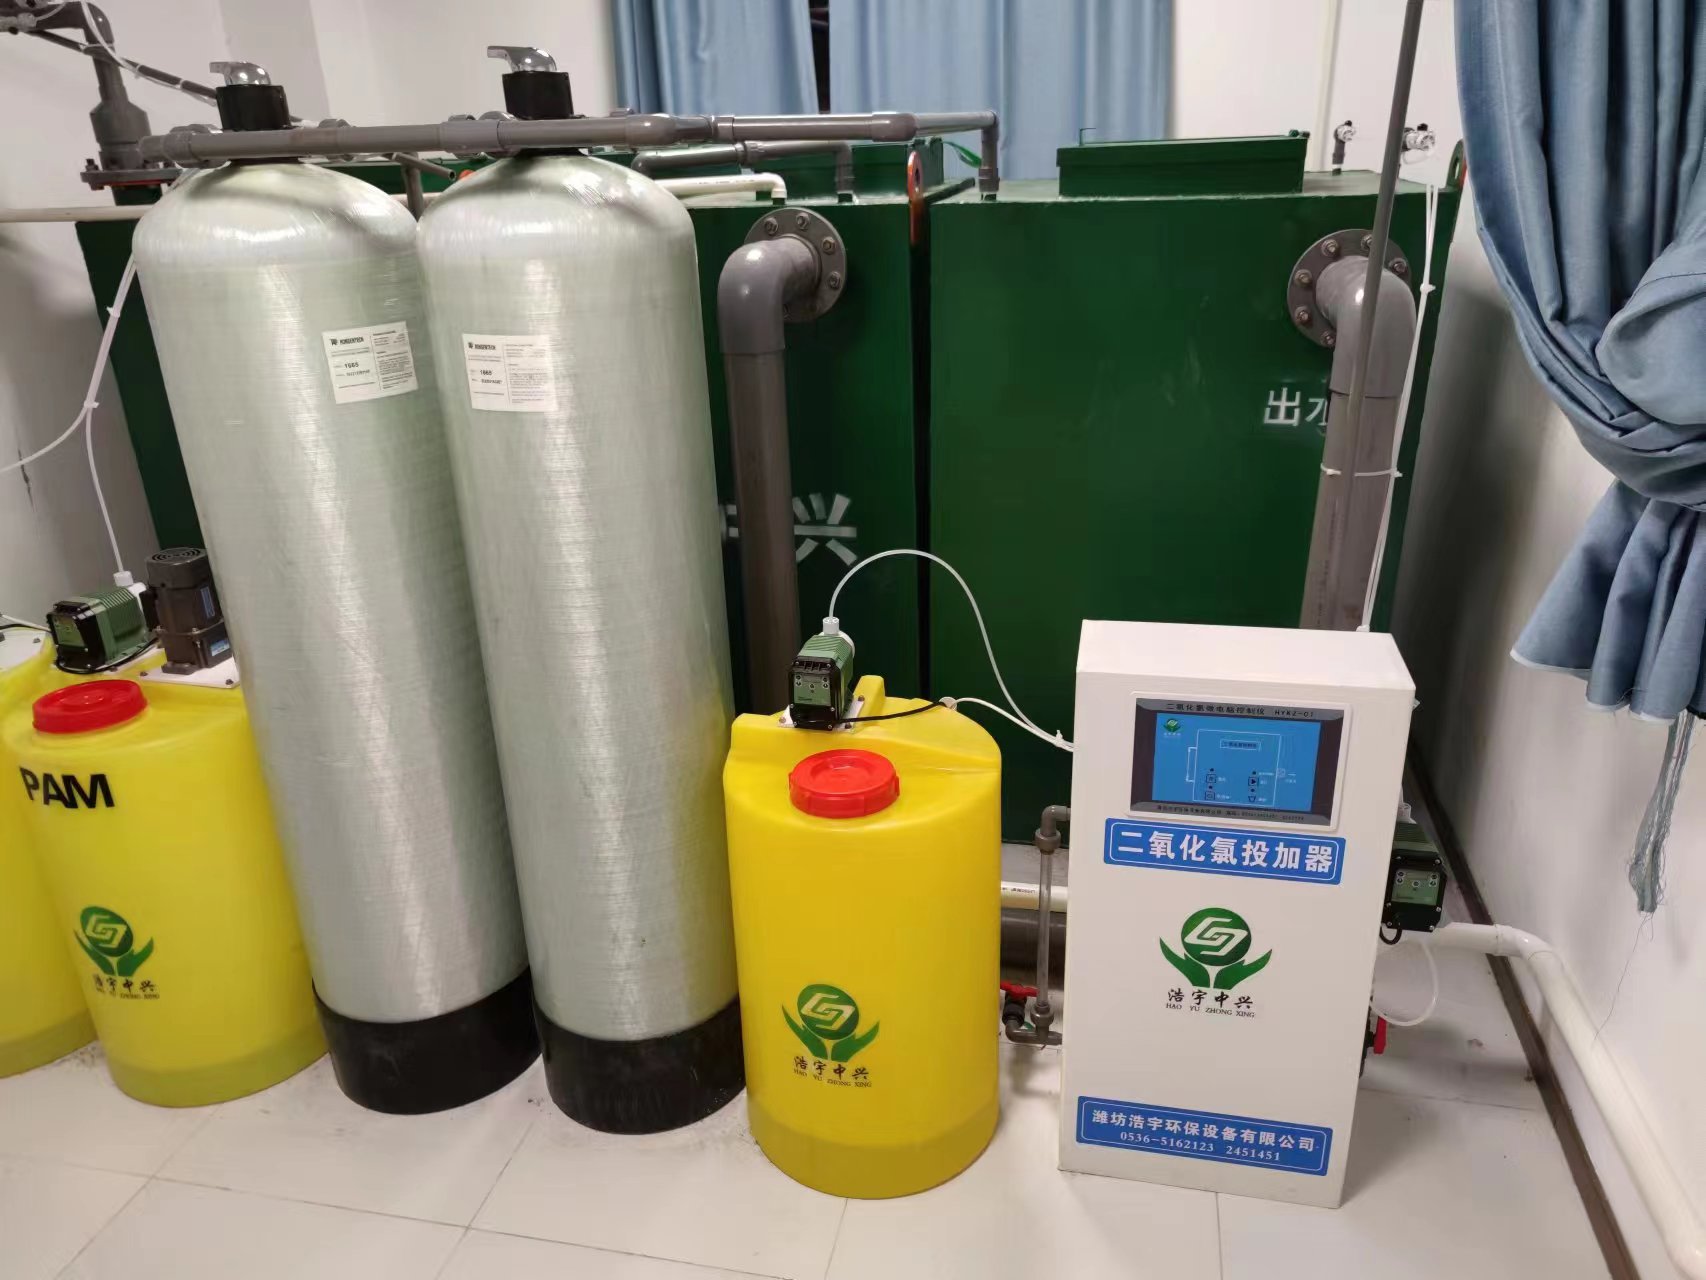 伊犁哈萨克自治州血液透析中心污水处理设备